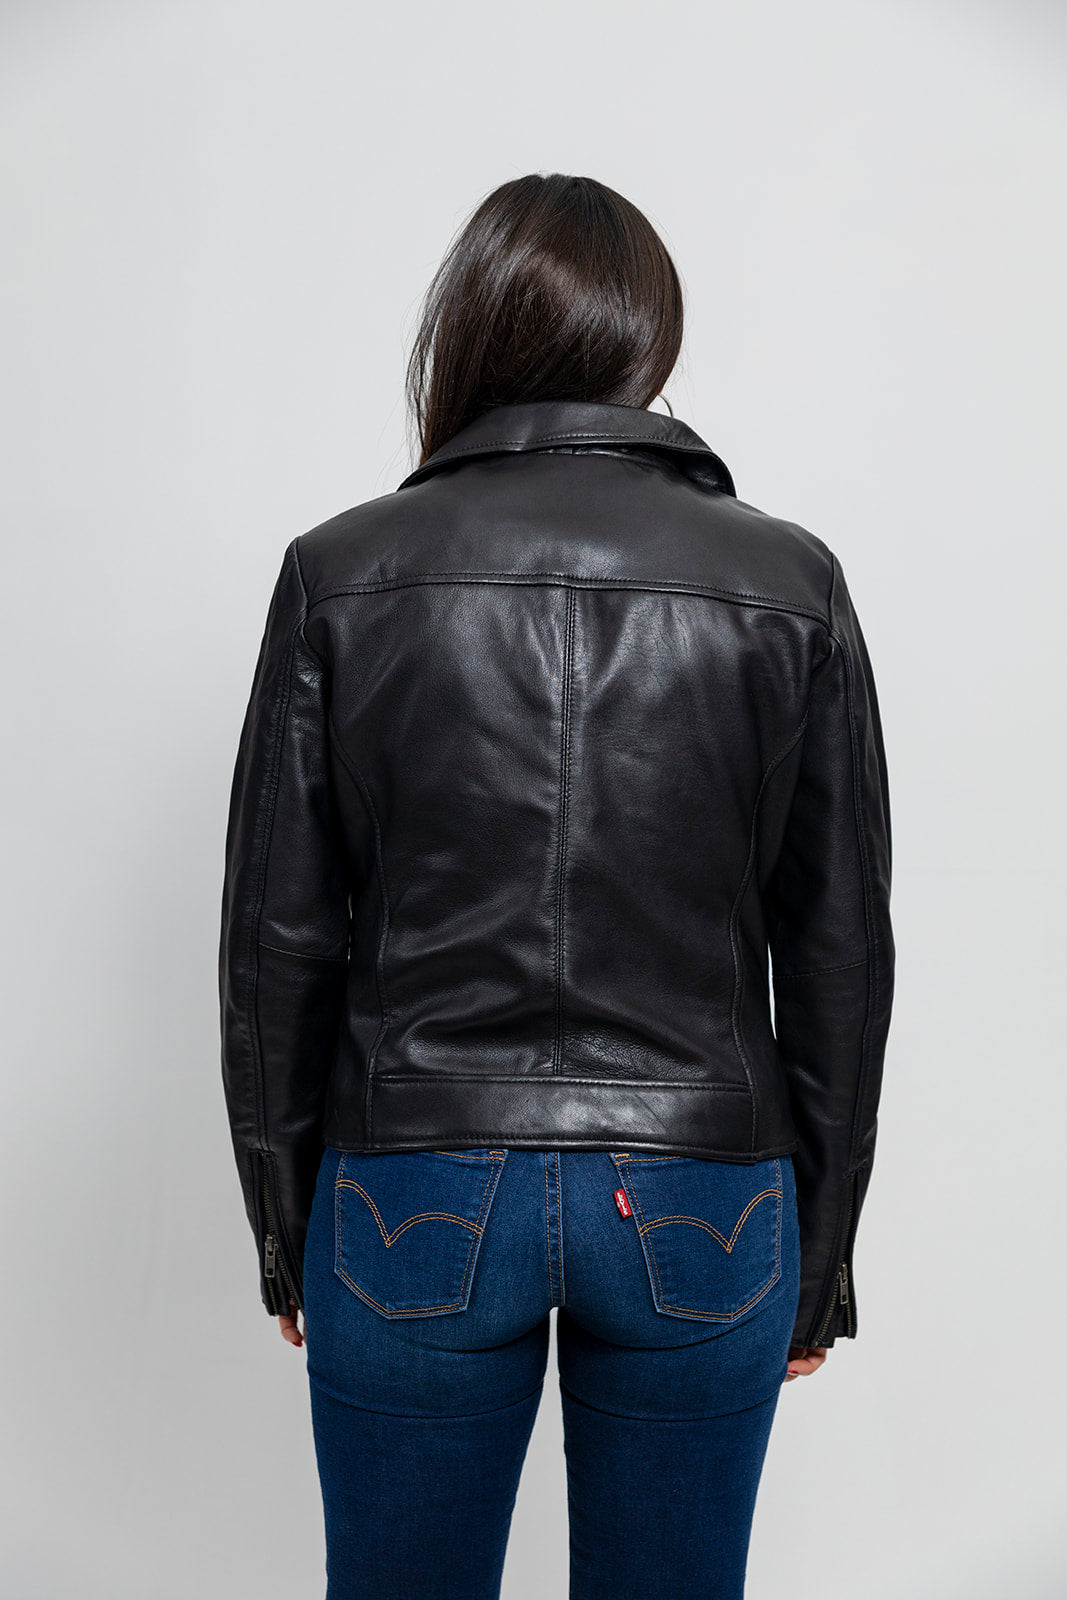 Betsy Womens Fashion Leather Jacket black Women's Leather Jacket Whet Blu NYC   